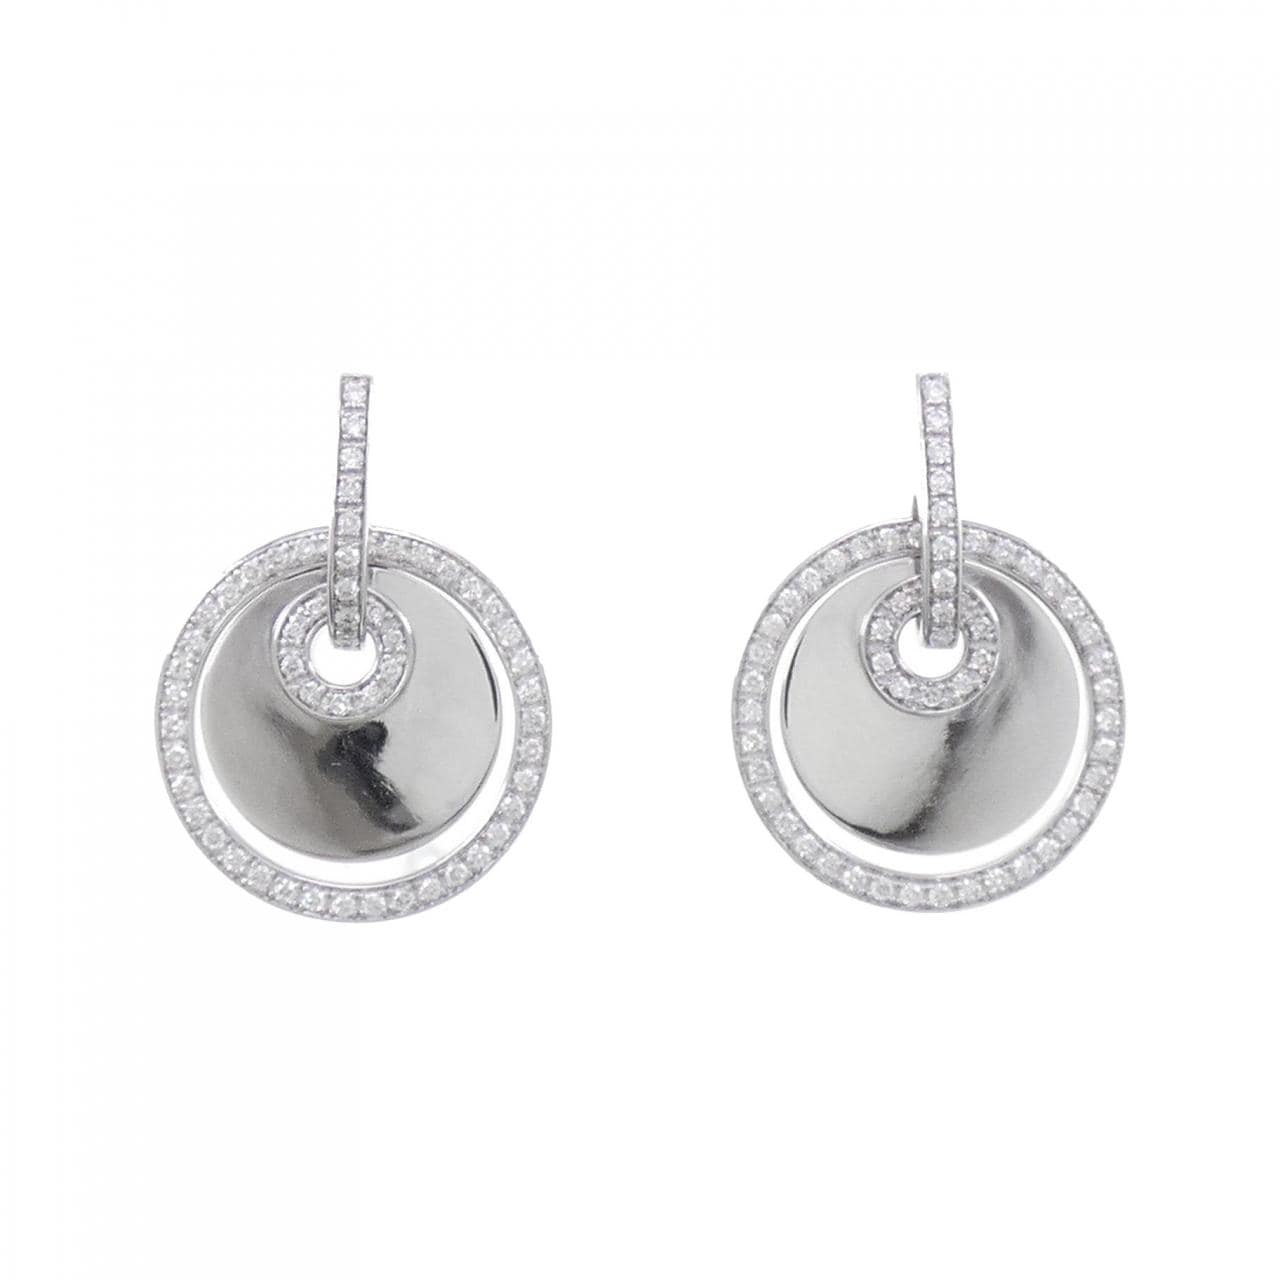 750WG/K18WG Diamond earrings 0.88CT